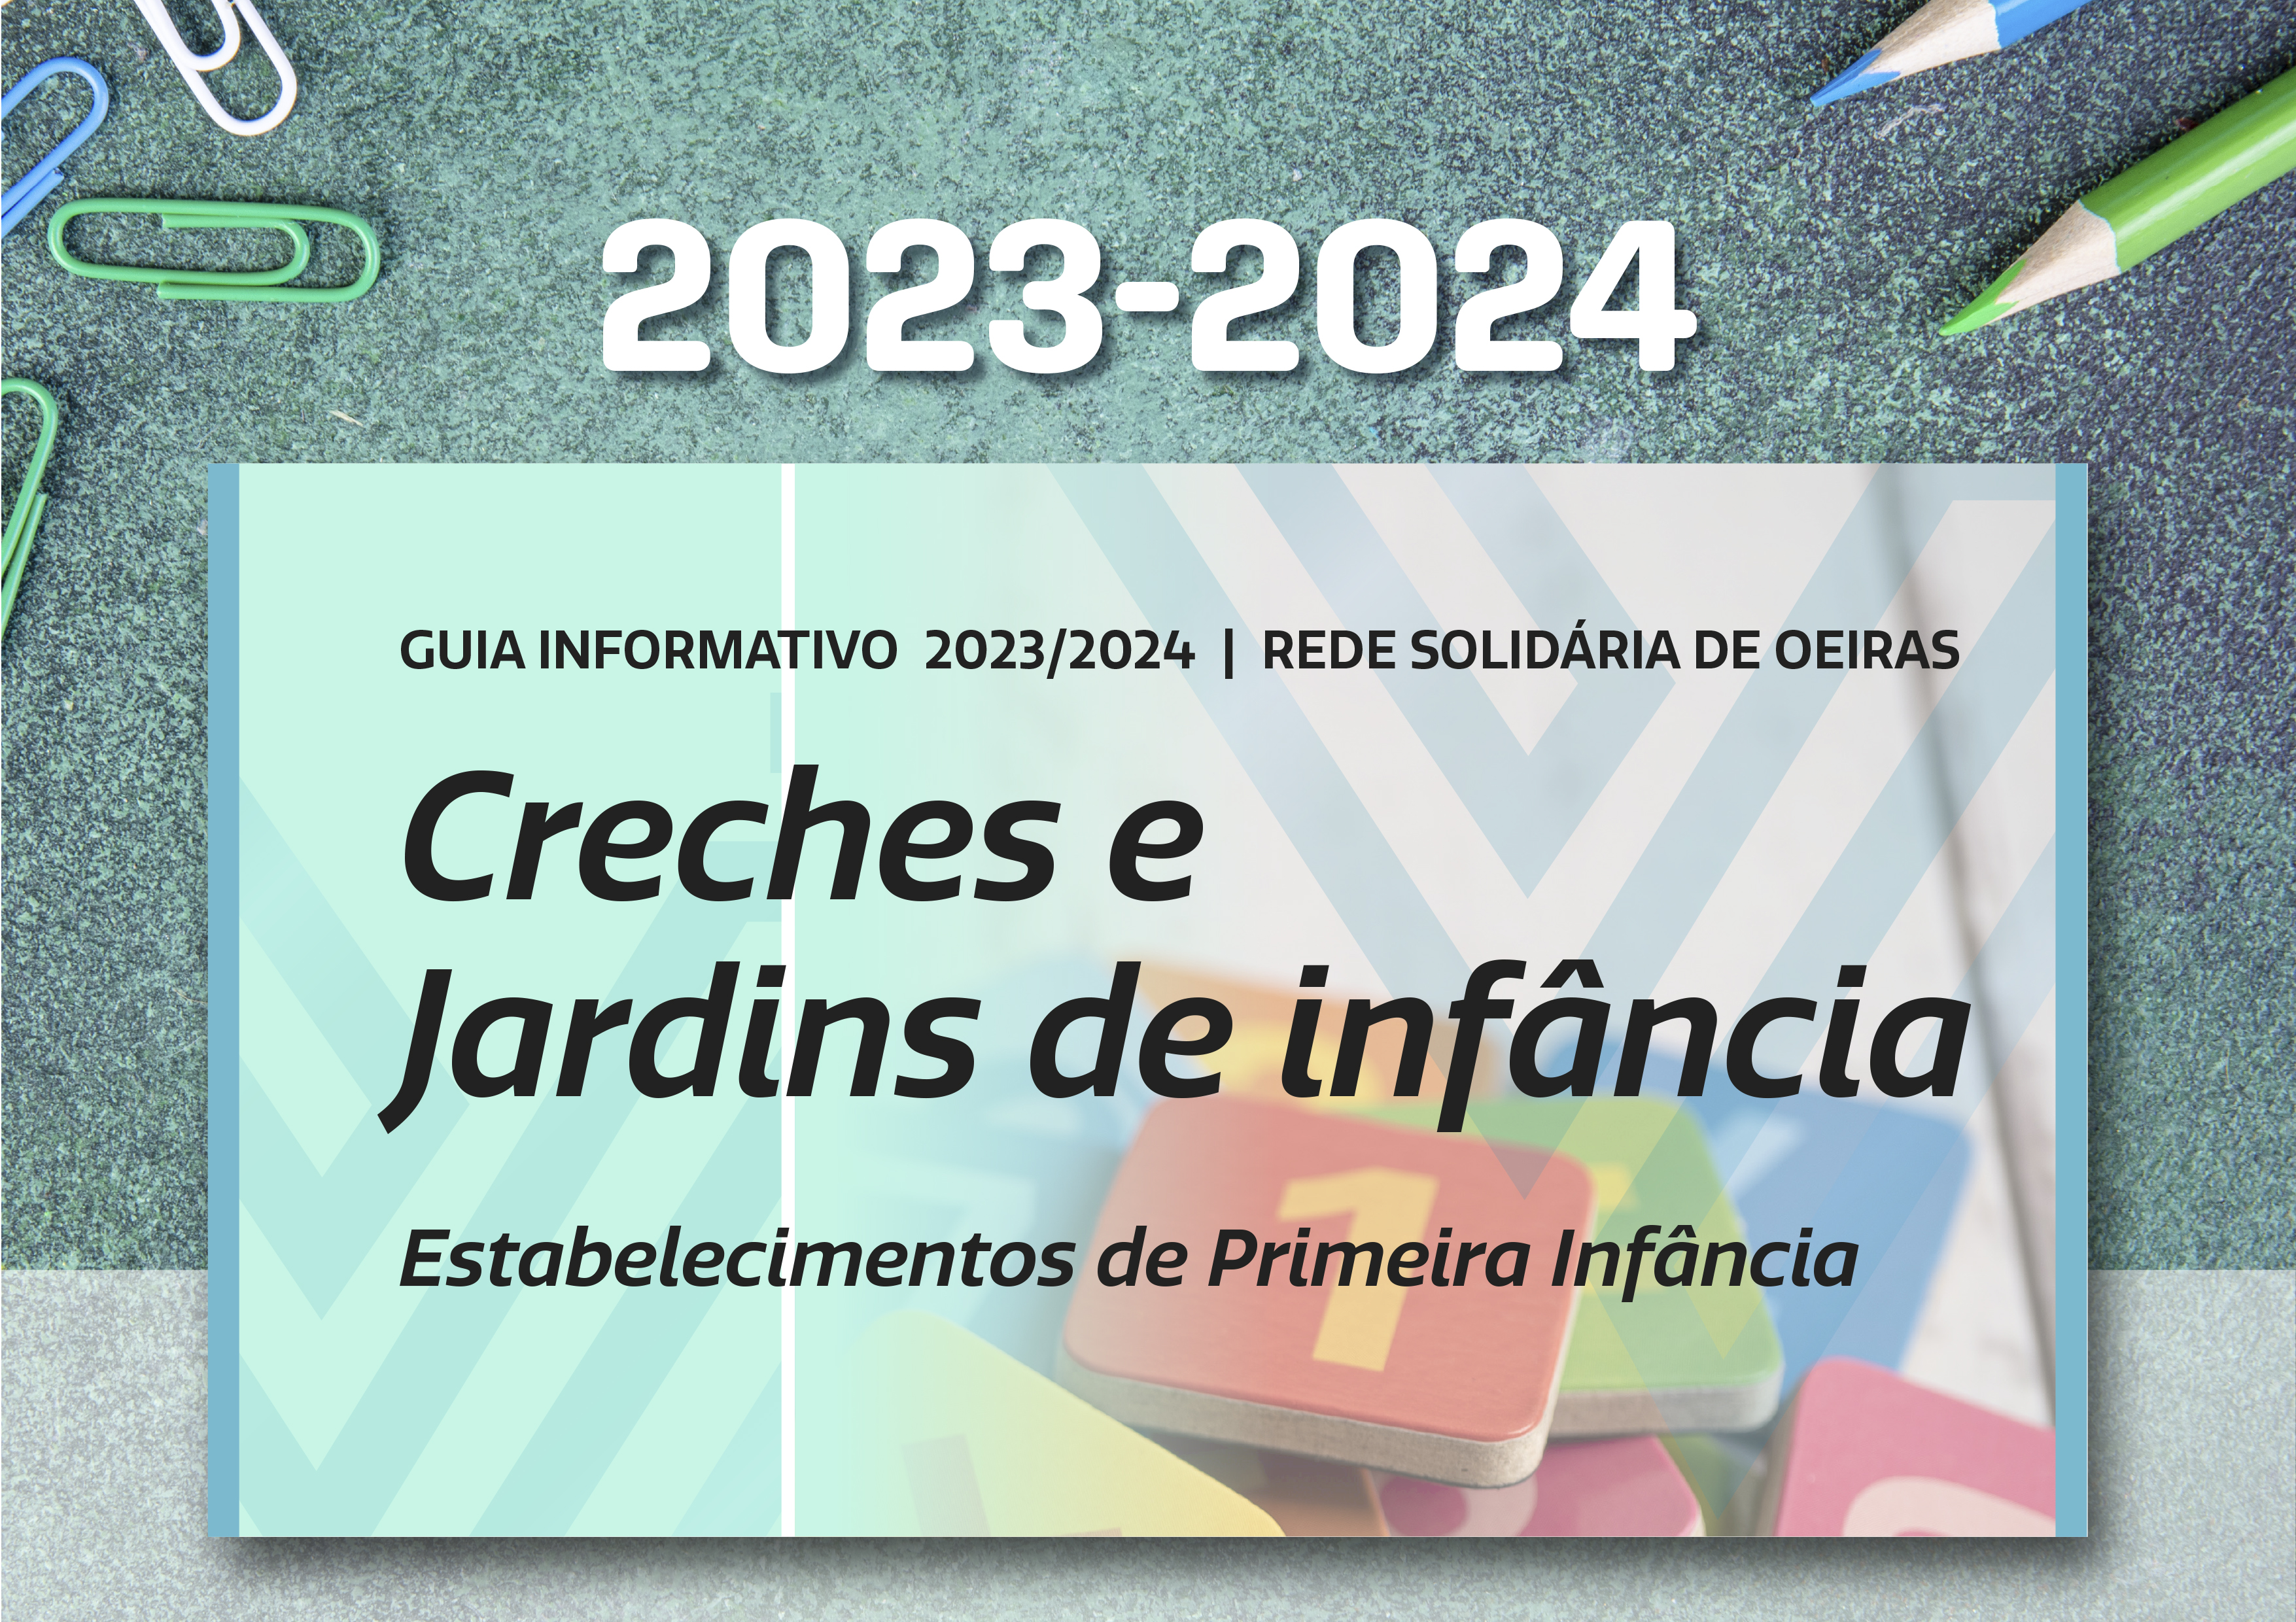 Guia Informativo da Rede Solidária de Oeiras 2023-2024